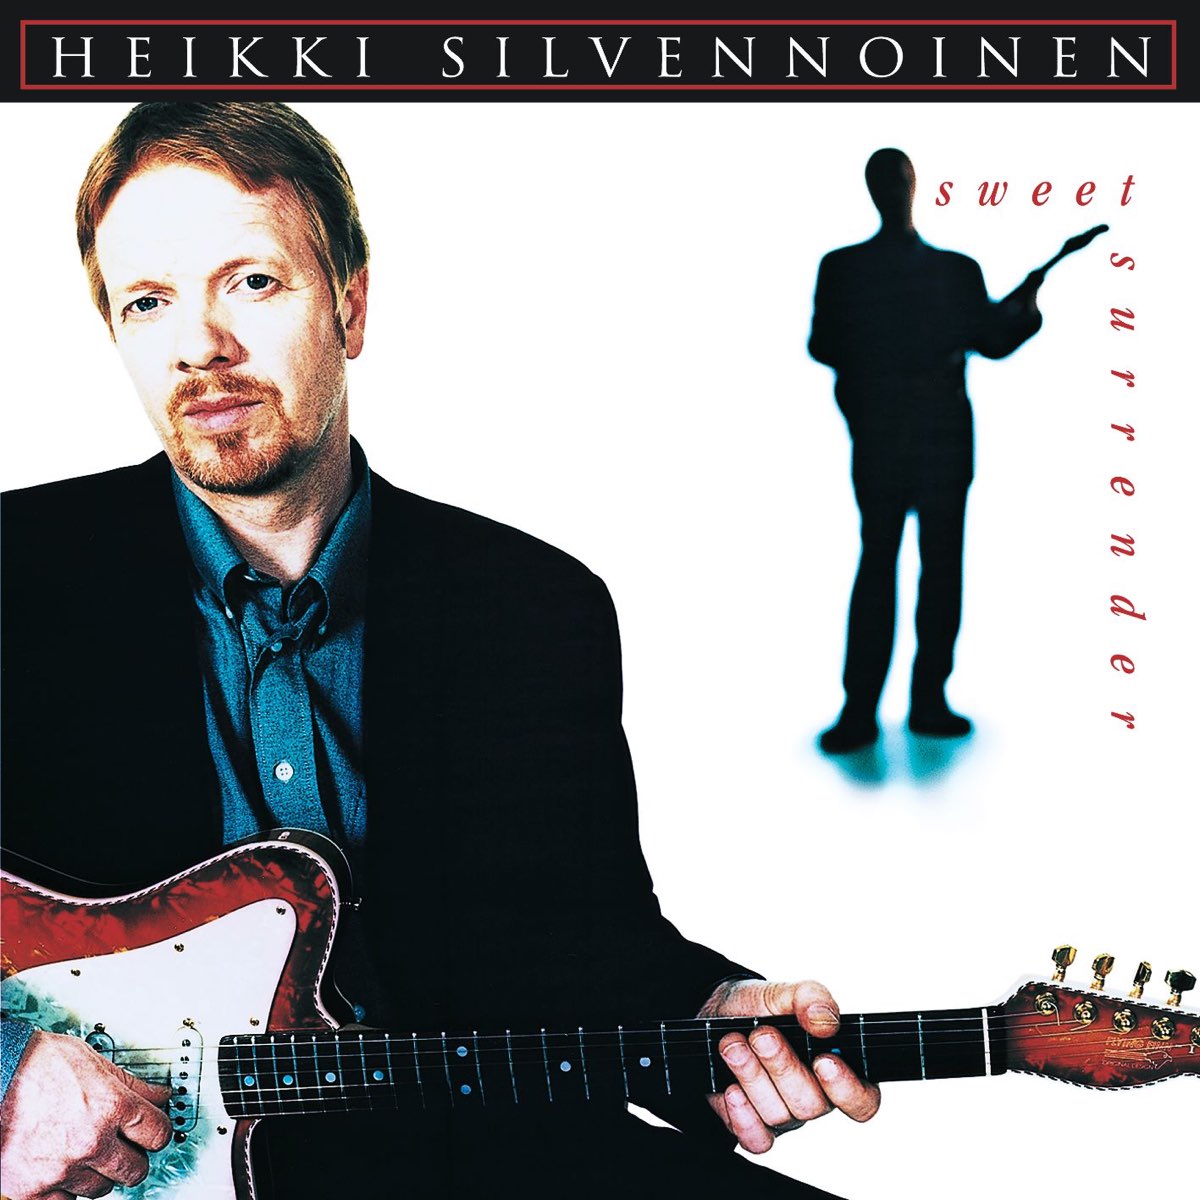 Sweet Surrender - Album by Heikki Silvennoinen - Apple Music